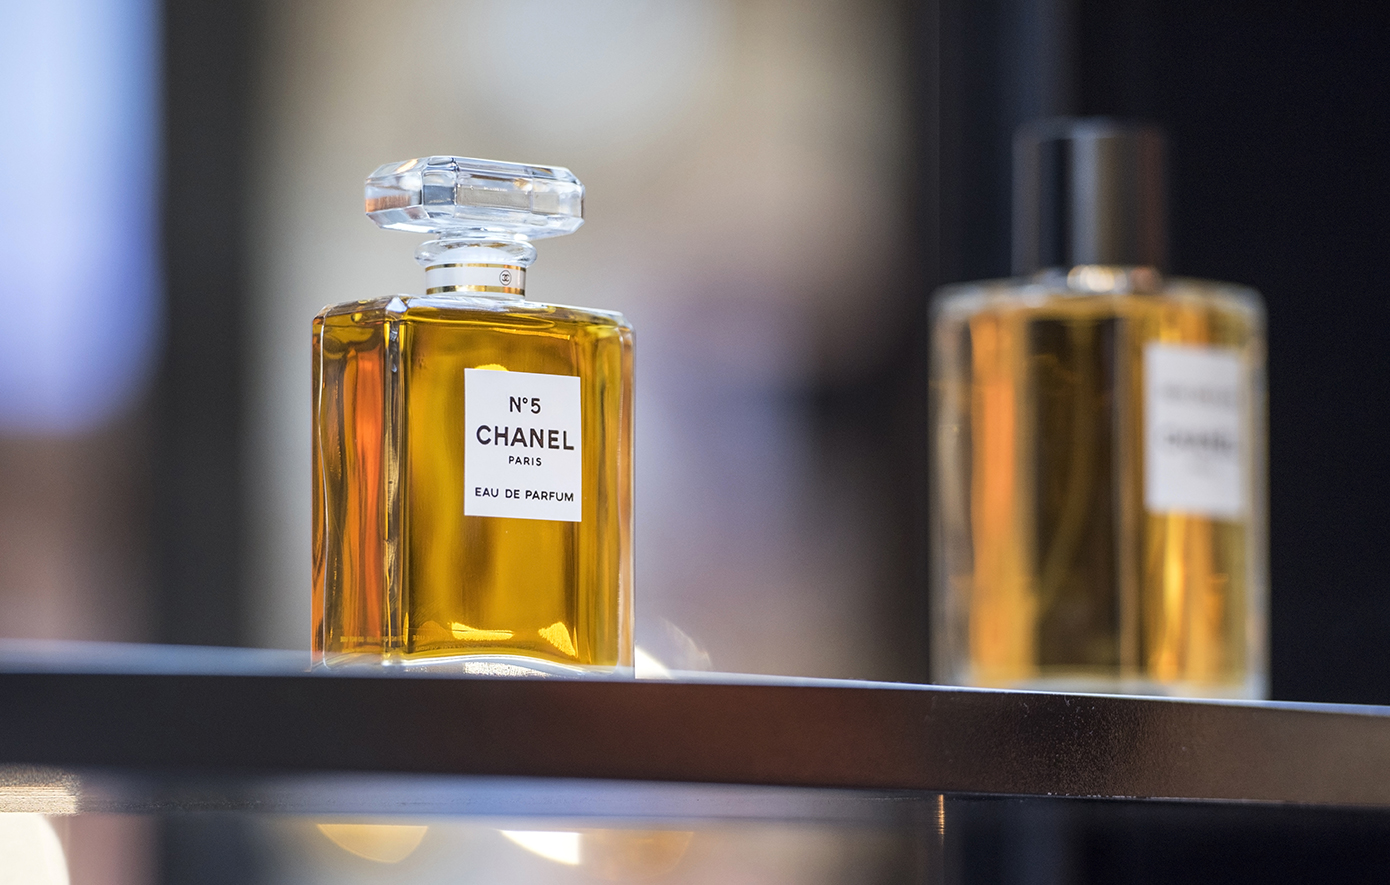 Σαν σήμερα 5 Μαΐου: Κυκλοφορεί το άρωμα Chanel No5 που είναι πιο παλιό και από την μπριγιαντίνη – Γιατί επιλέχθηκε το συγκεκριμένο από την Κοκό